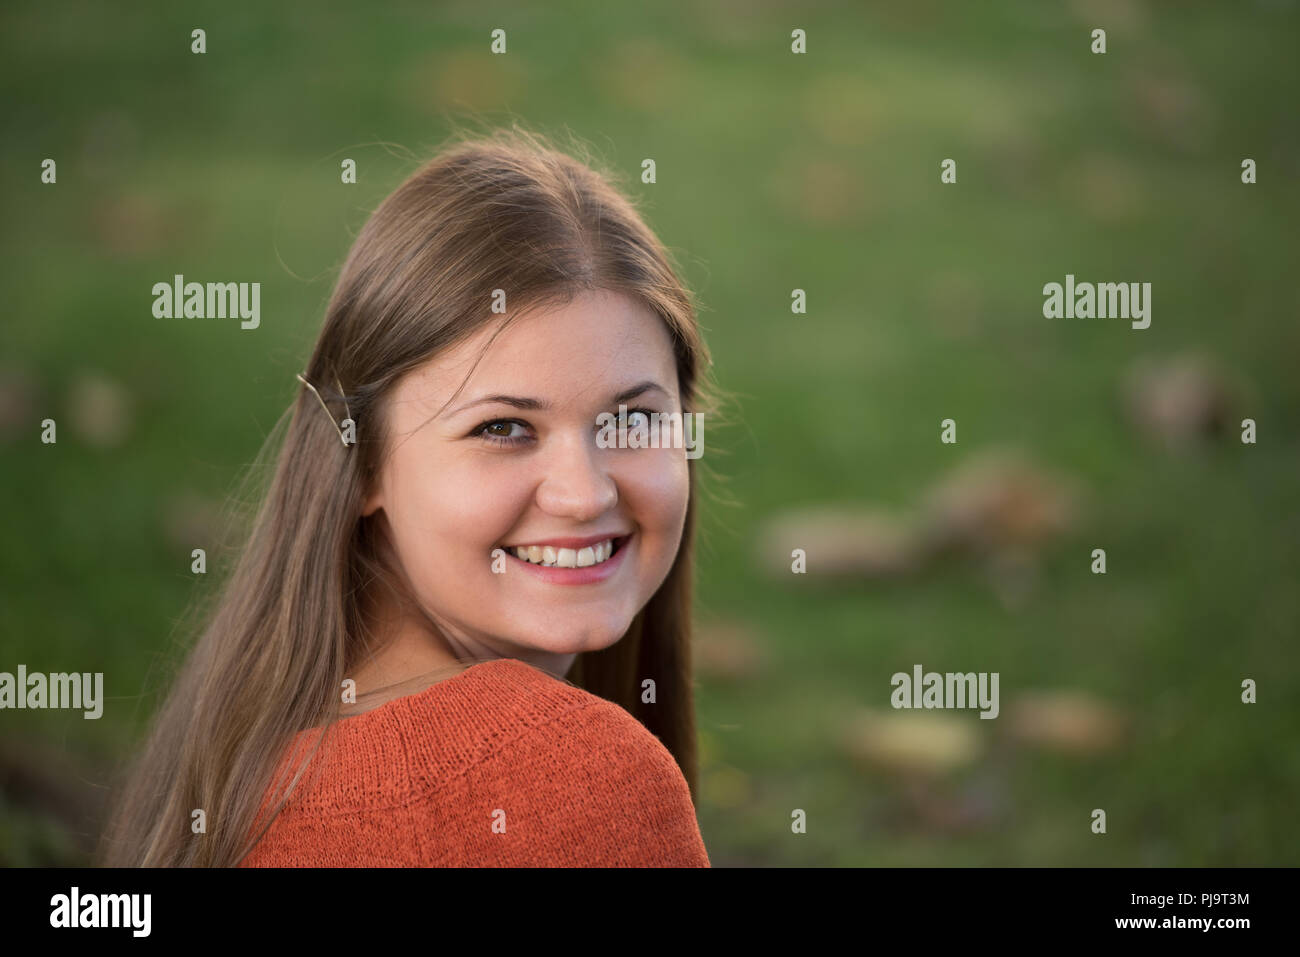 Porträt der hübsche junge Frau in abend herbst Sonne, lächeln Stockfoto